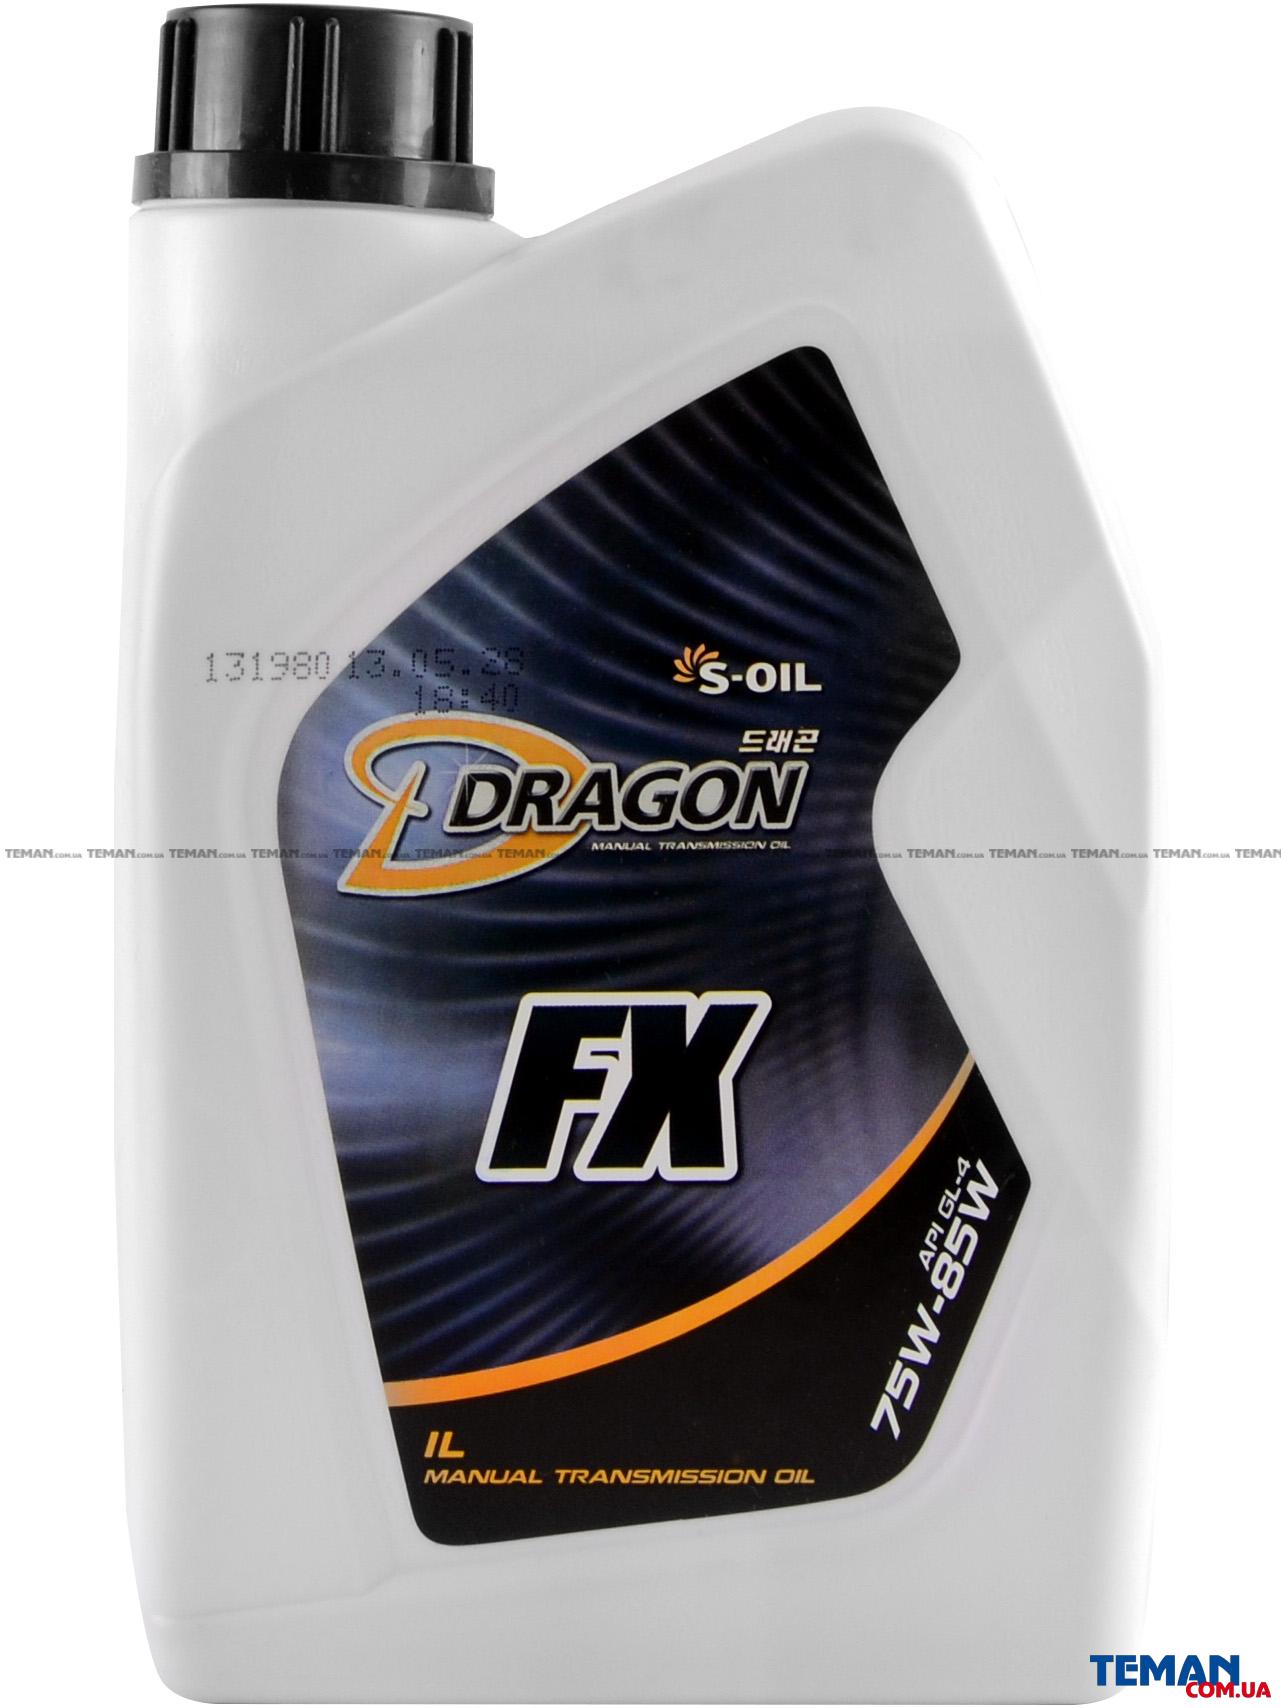  Купить Полусинтетическое трансмиссионное масло S-OIL DRAGON FX 75W-85 GL-4, 1лS-OIL DRAGONFX75W851   